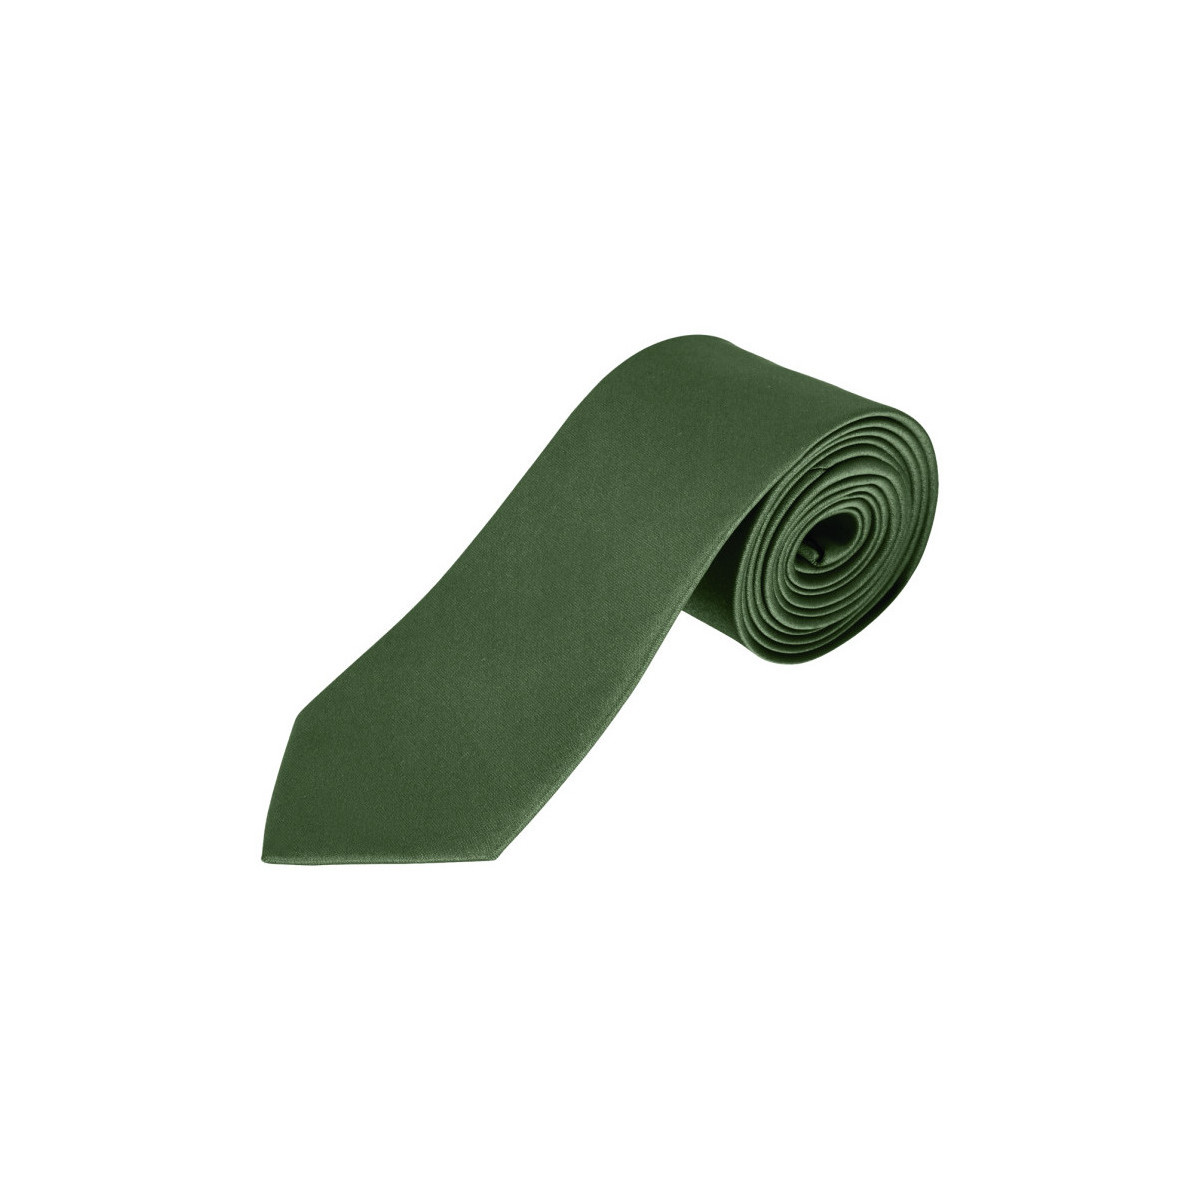 Îmbracaminte Bărbați Costume și cravate Sols GARNER - CORBATA verde